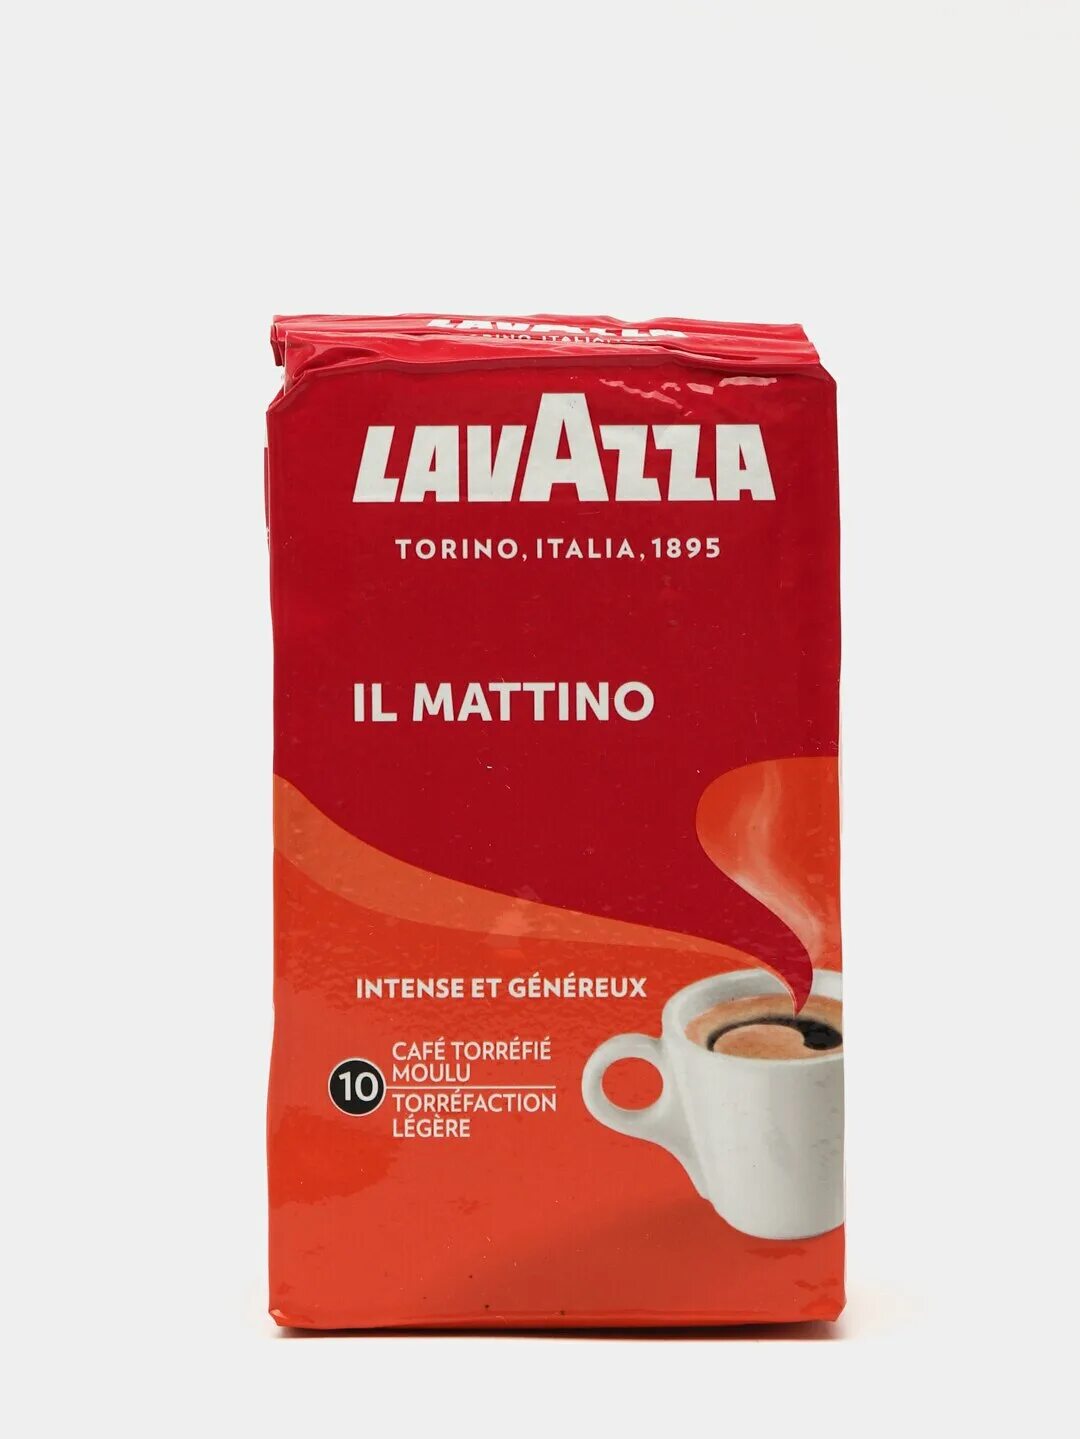 Ундервуд лавацца. Lavazza кофе молотый 250 гр. Кофе молотый Lavazza il mattino вакуумная упаковка. Кофе Лавацца в вакуумной упаковке. Lavazza 7/10.